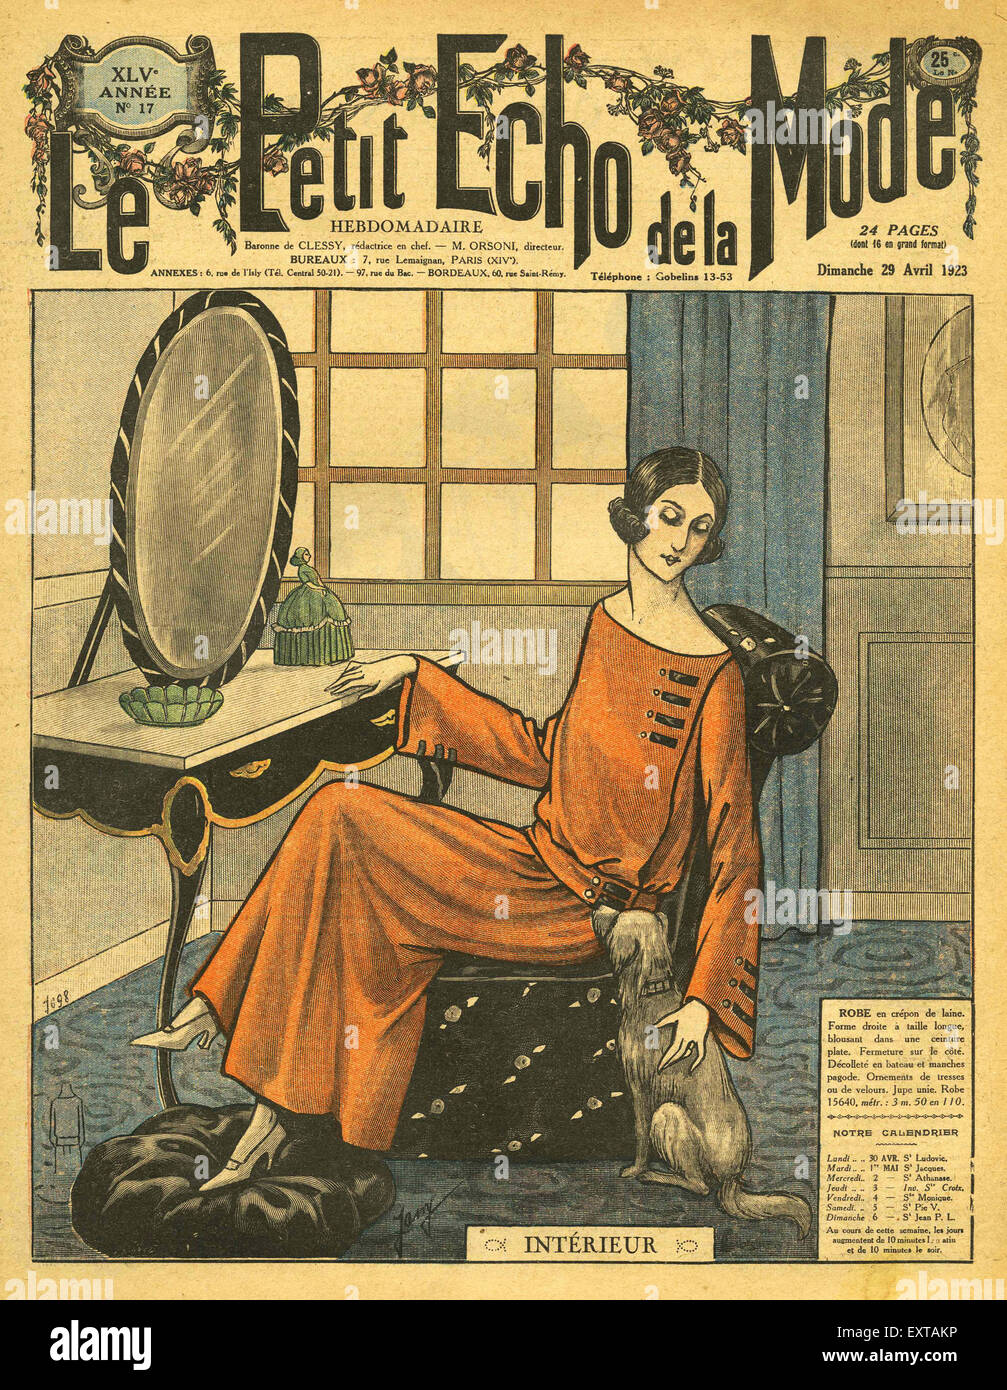 1920s France Le Petit Echo de le Mode Magazine Cover Stock Photo - Alamy